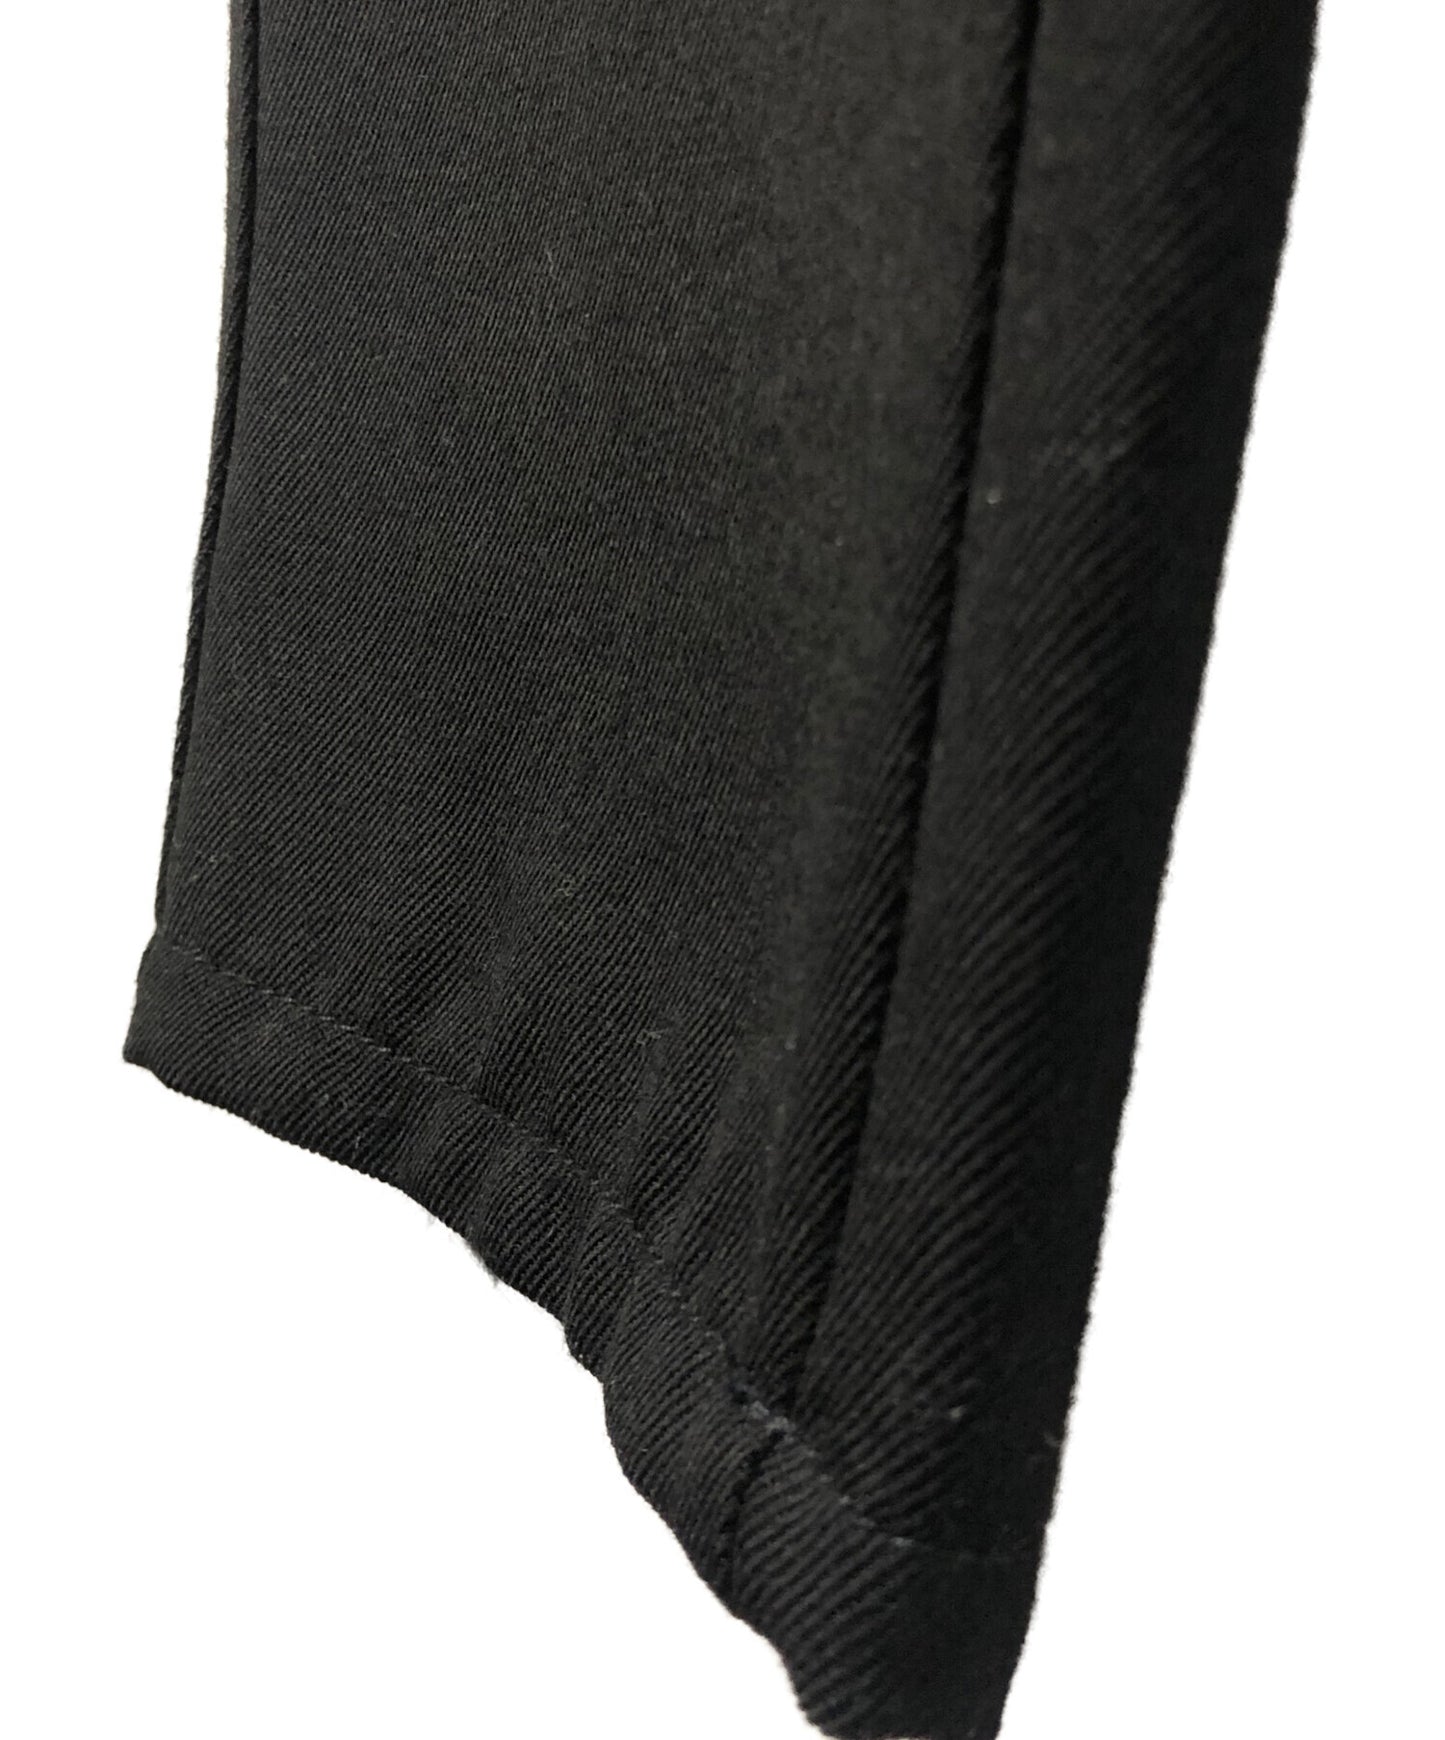 [Pre-owned] COMME des GARCONS SHIRT wool slacks pants W27133